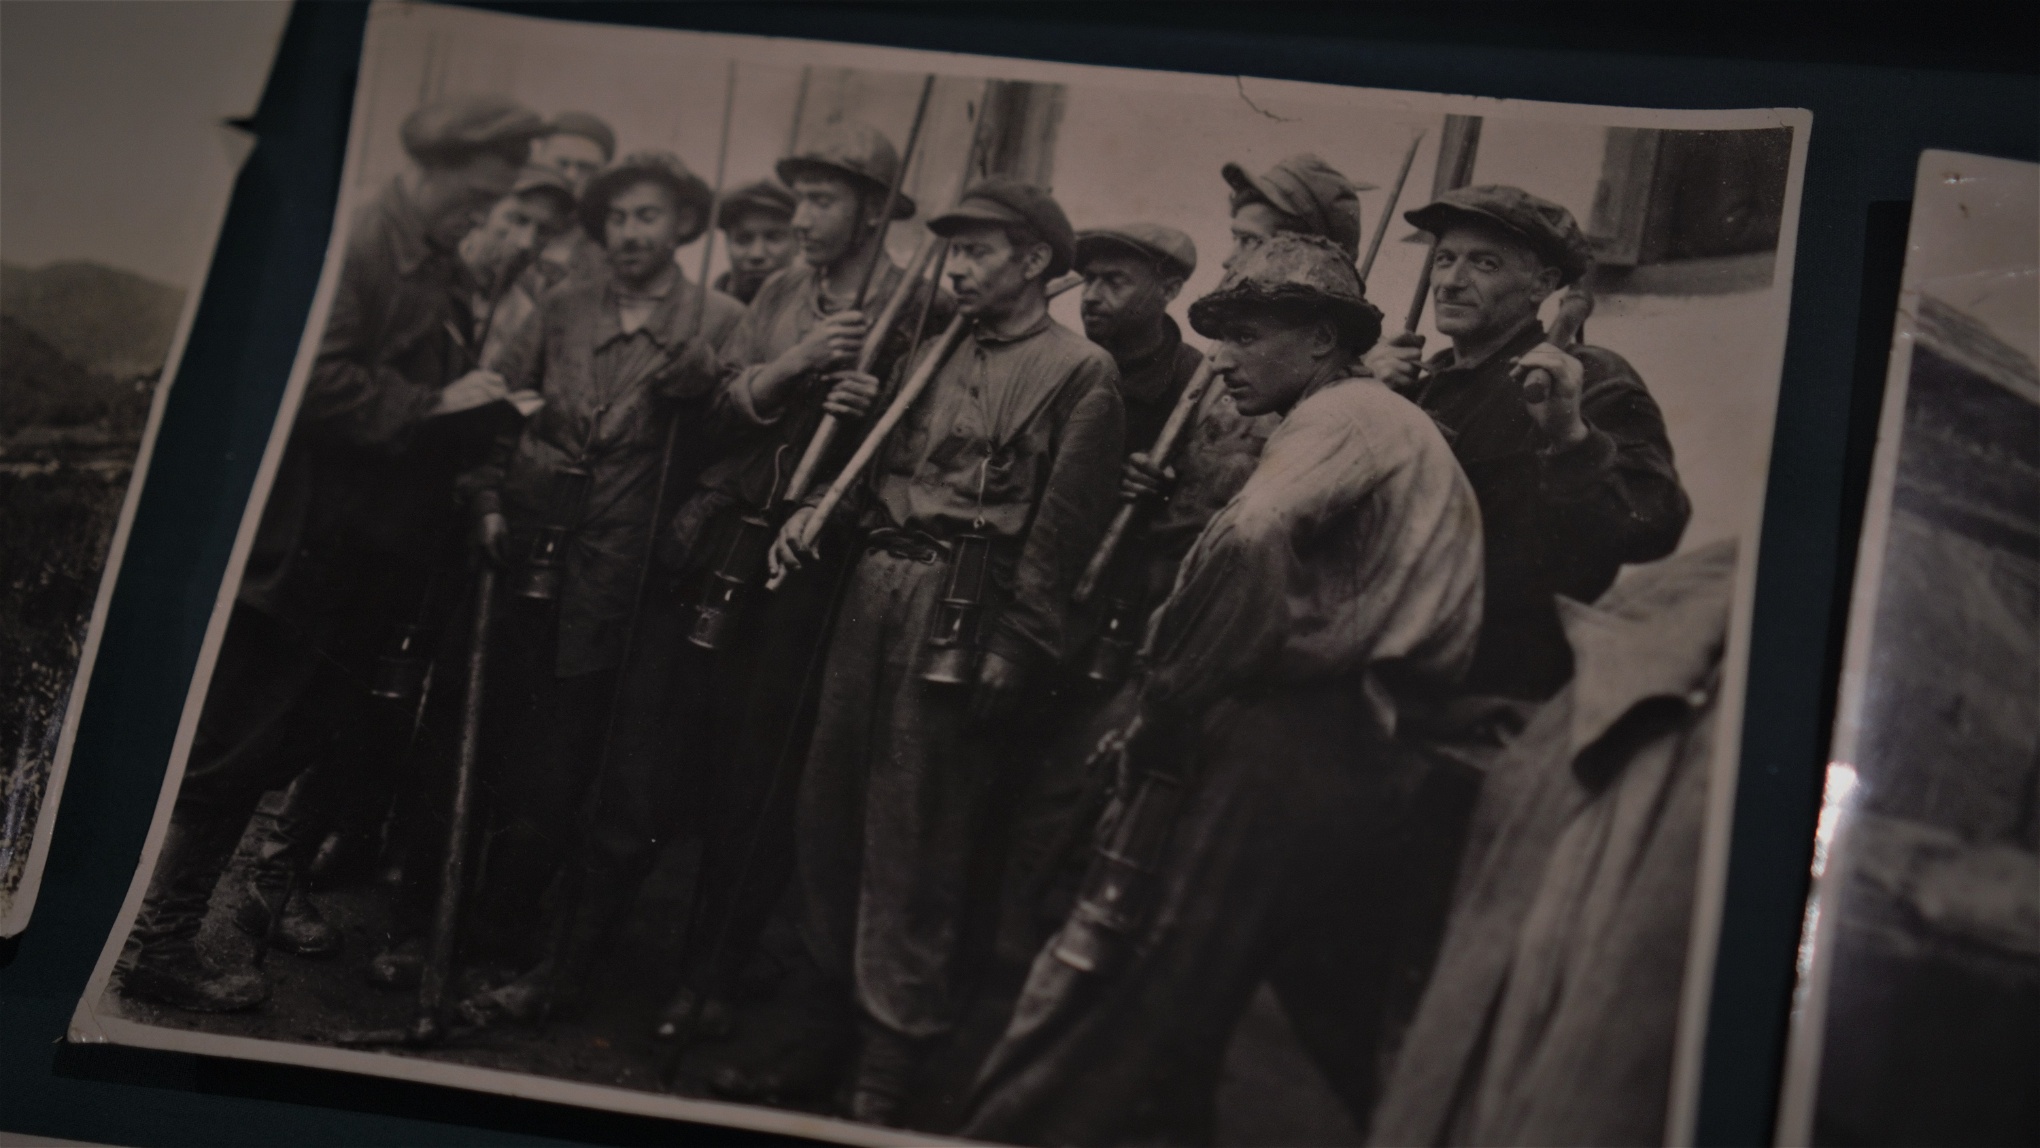 Gruvverksamheten i Tquil började ta fart på 1800-talet. På den här bilden, från Tqibulis museum, syns gruvarbetare under Sovjettiden.